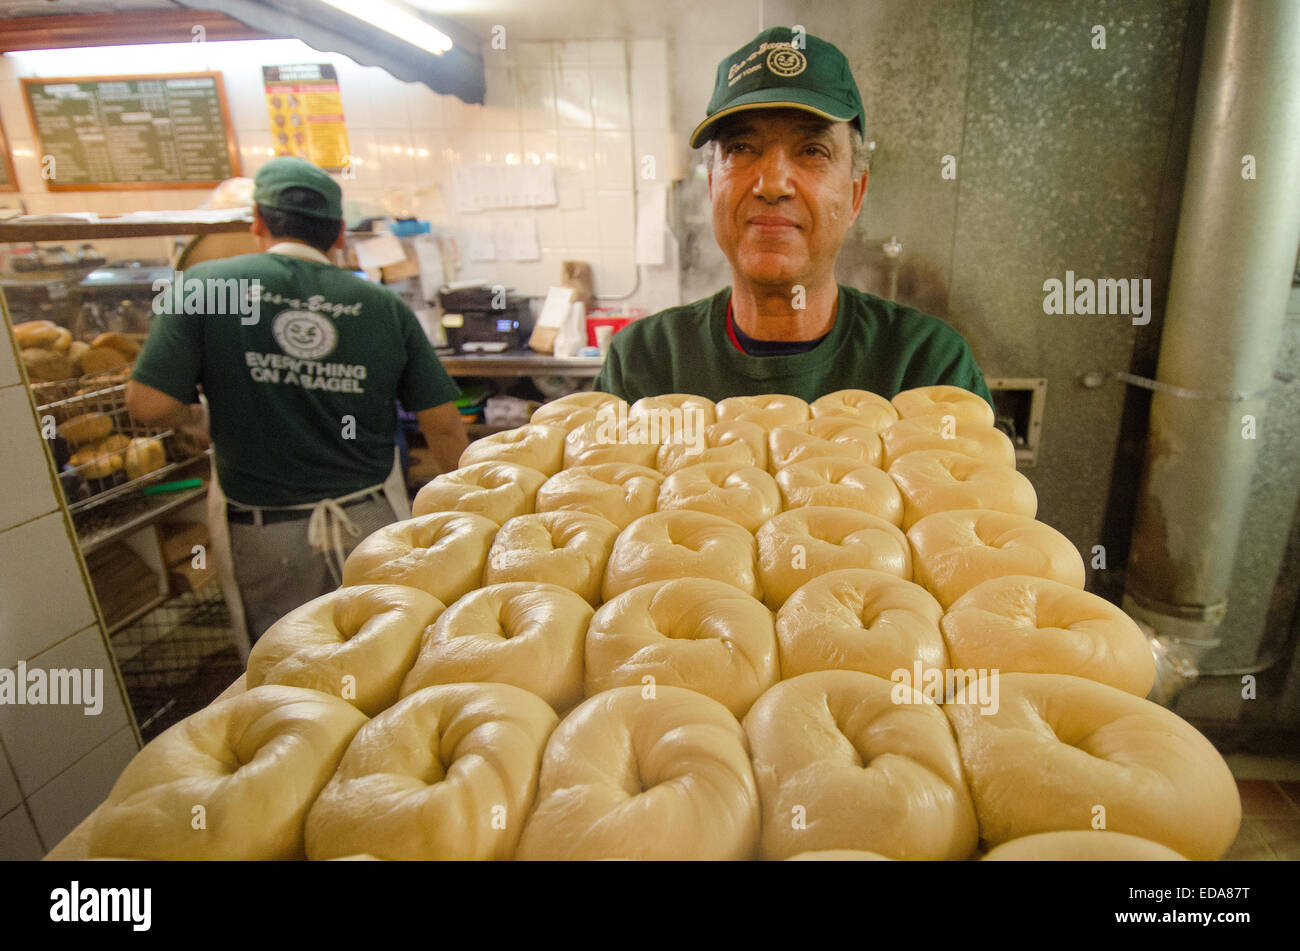 Wasserkocher gekocht Bagels sind für die letzte Phase der Vorbereitung auf New York Citys Ess-a-Bagel zum Ofen transportiert. Stockfoto